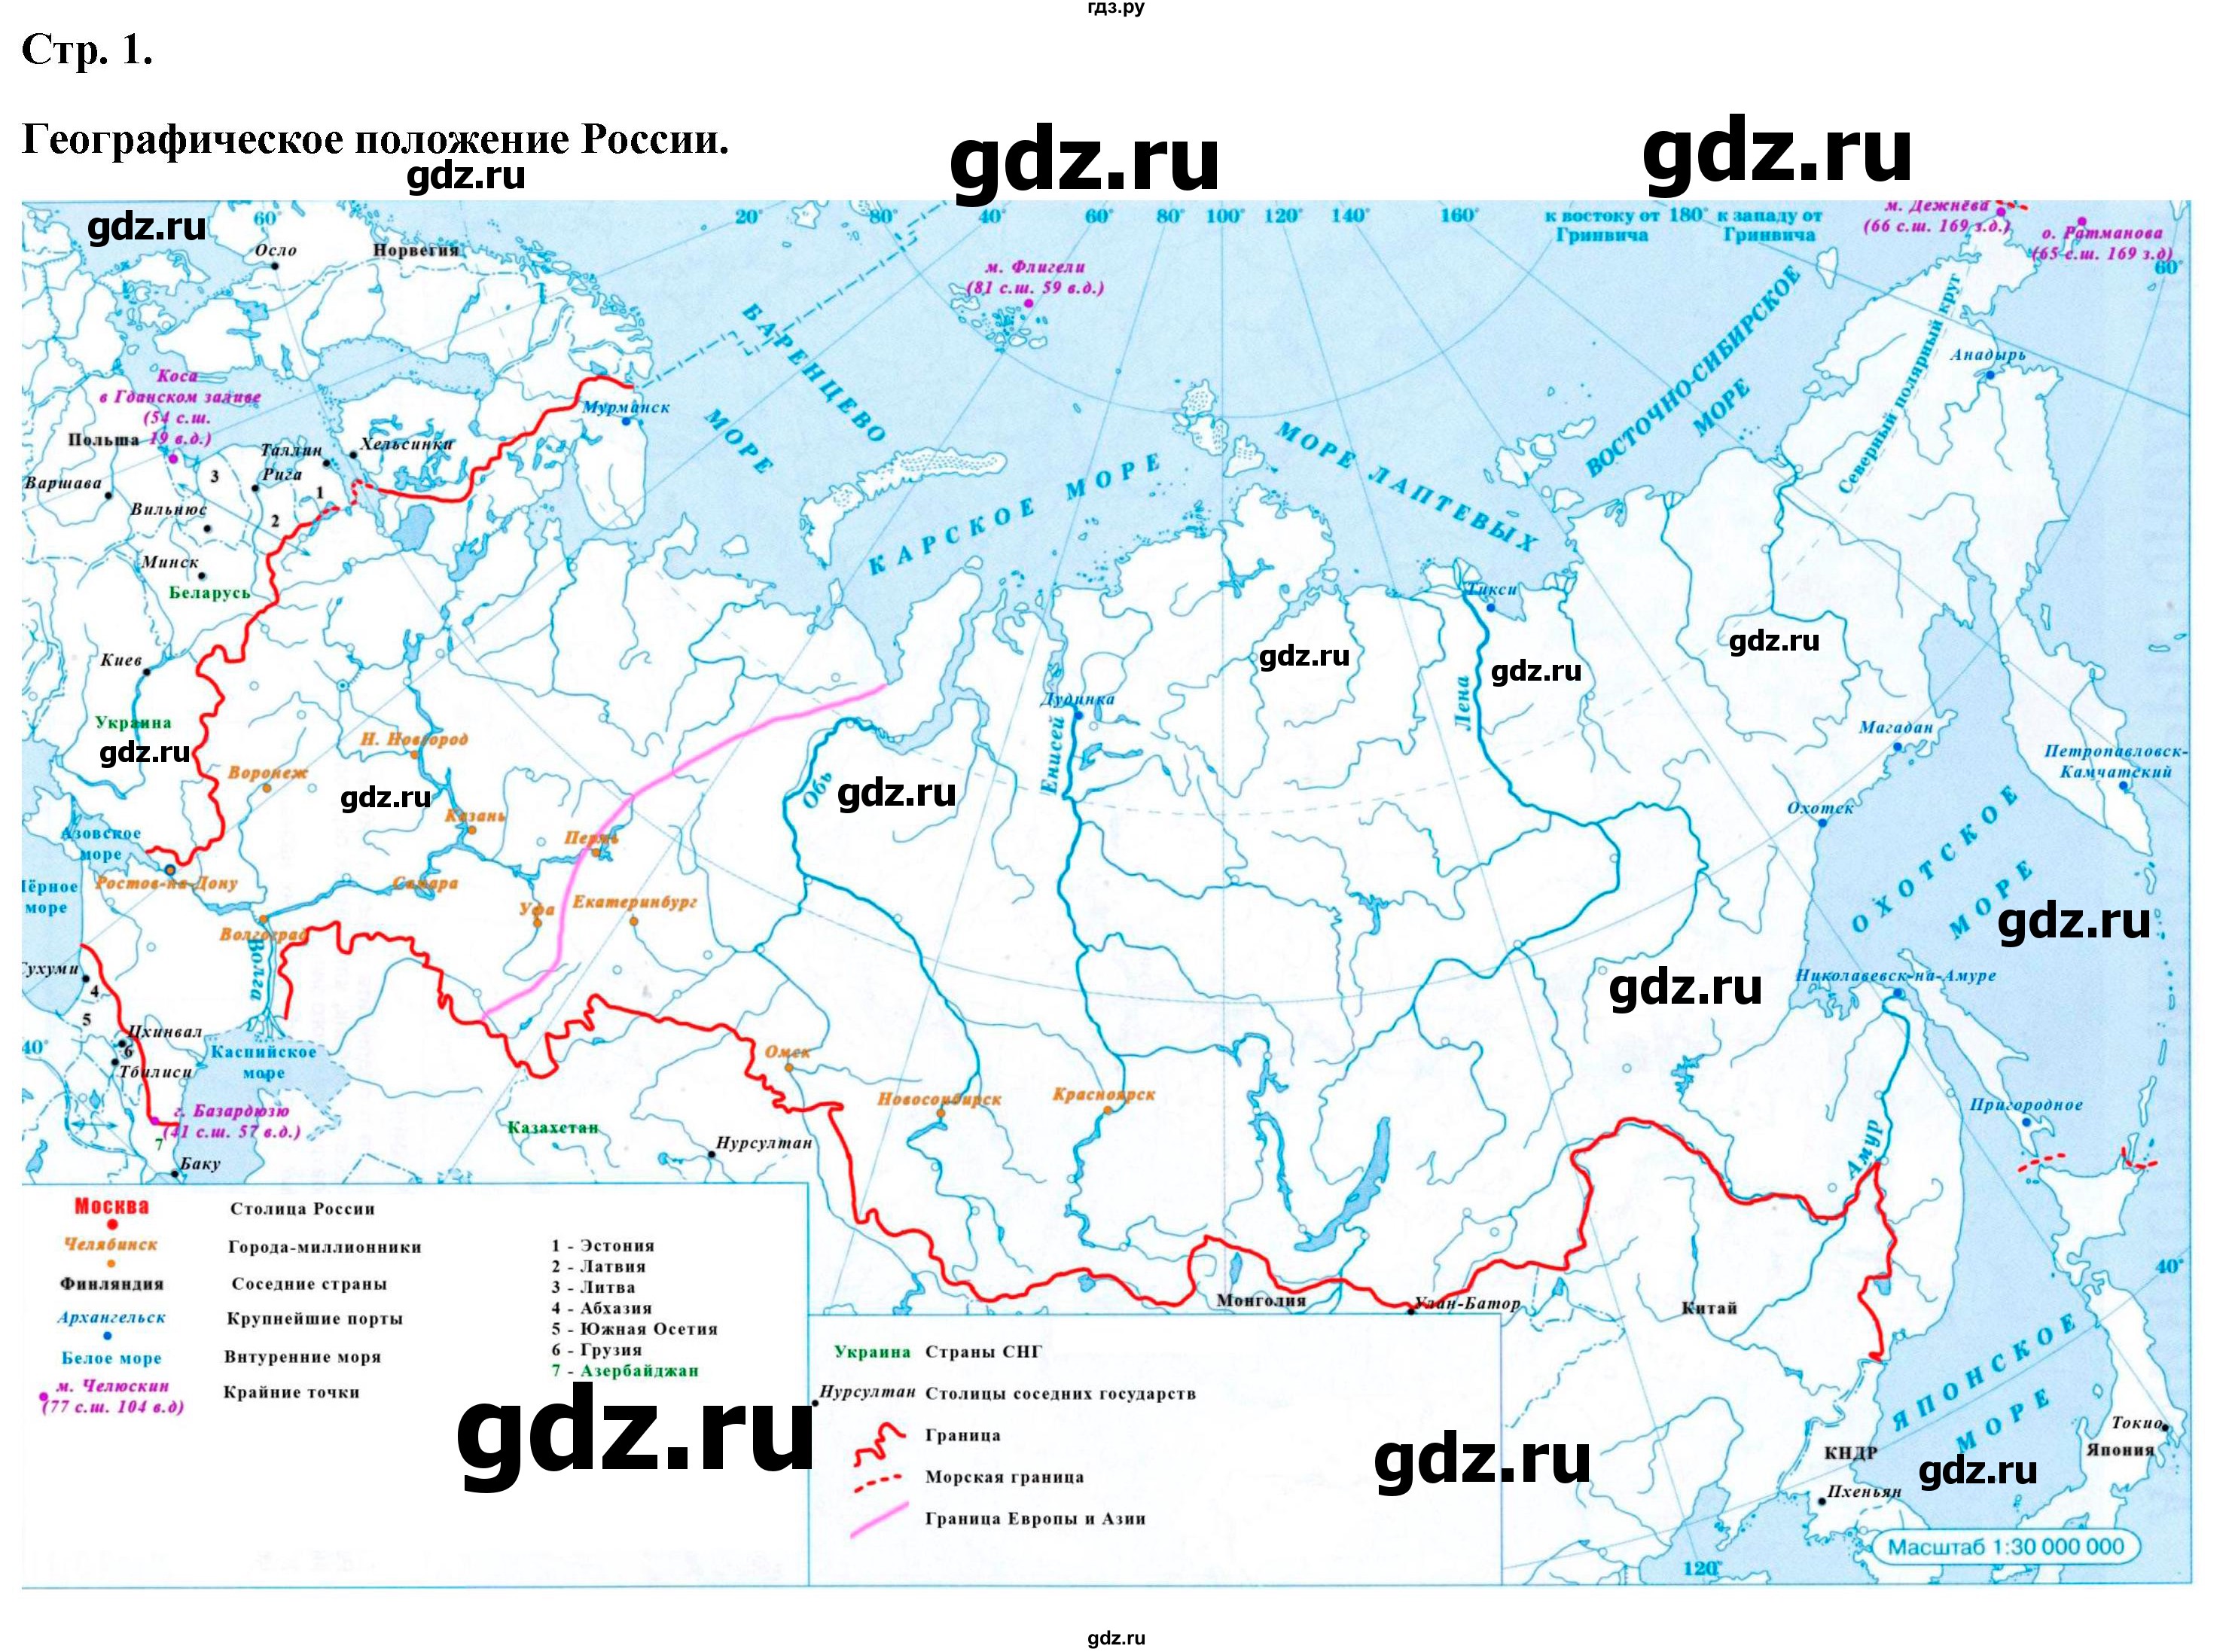 ГДЗ контурные карты стр.1 география 9 класс атлас с контурными картамиПриваловский, Курбский